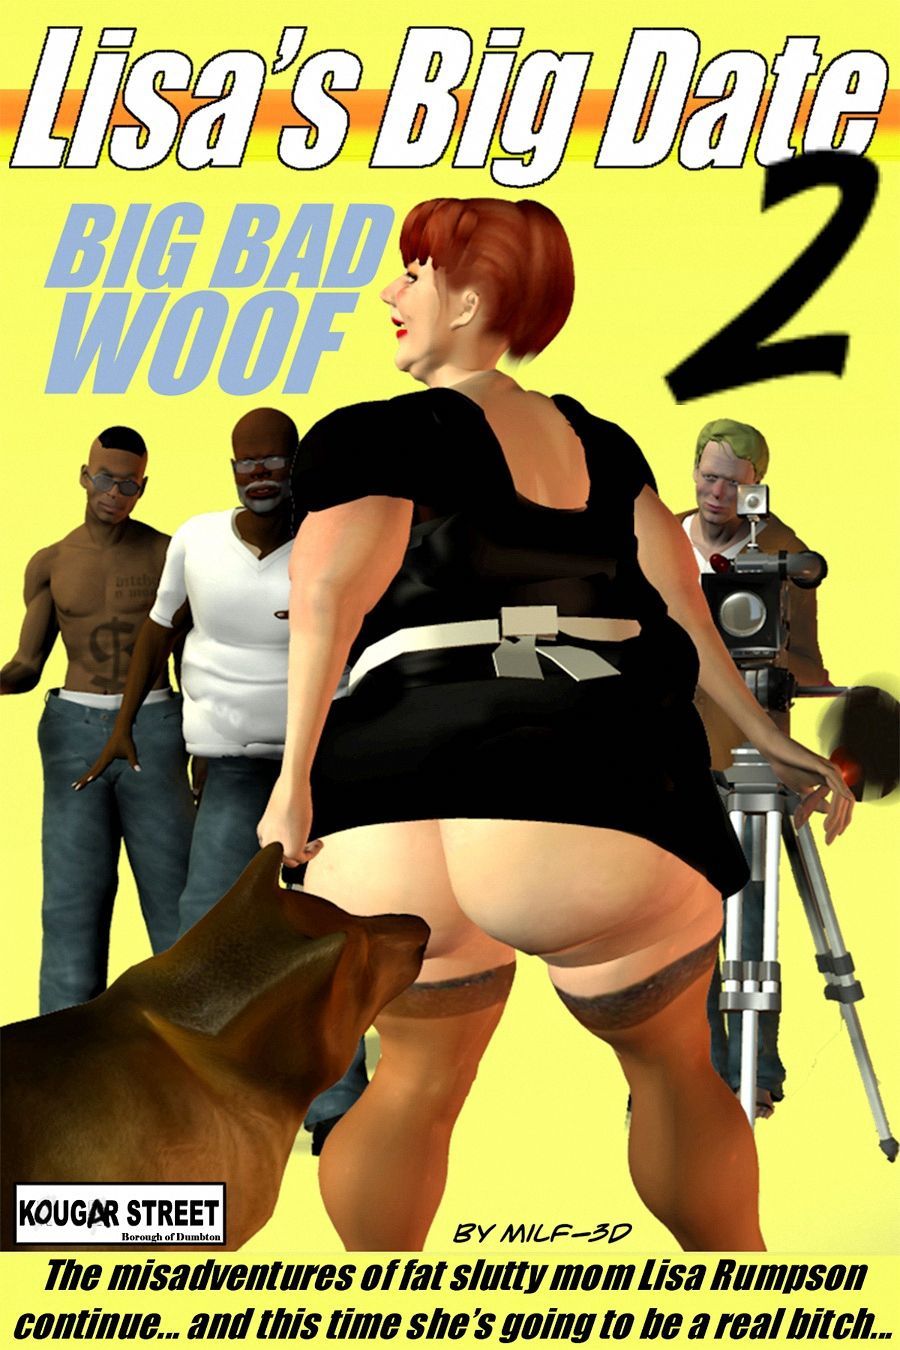 [Milf-3D] Lisa's Big Date 2: Big Bad Woof 1